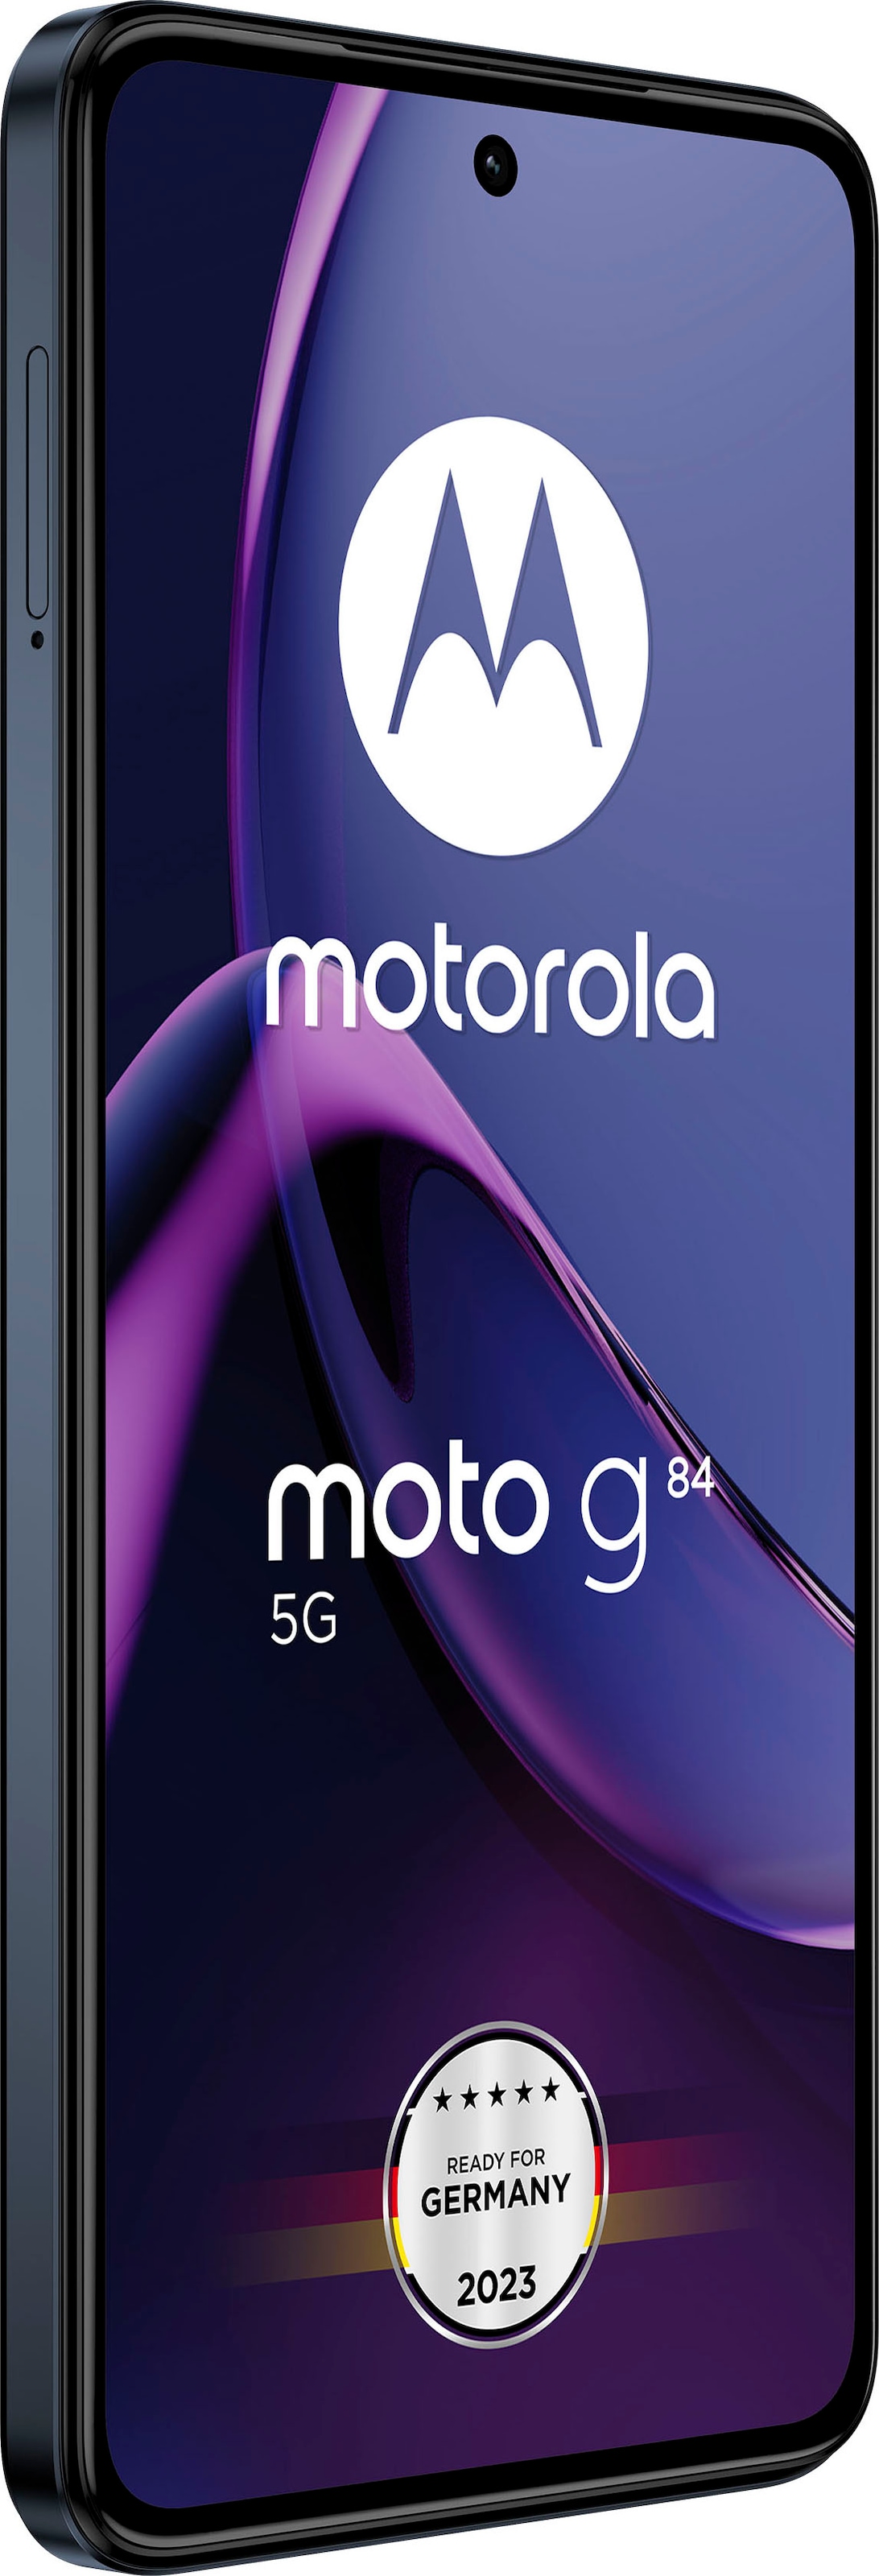 Motorola Smartphone »g84«, Glacier MP kaufen Blau, Kamera cm/6,55 Zoll, Rechnung 50 16,64 auf